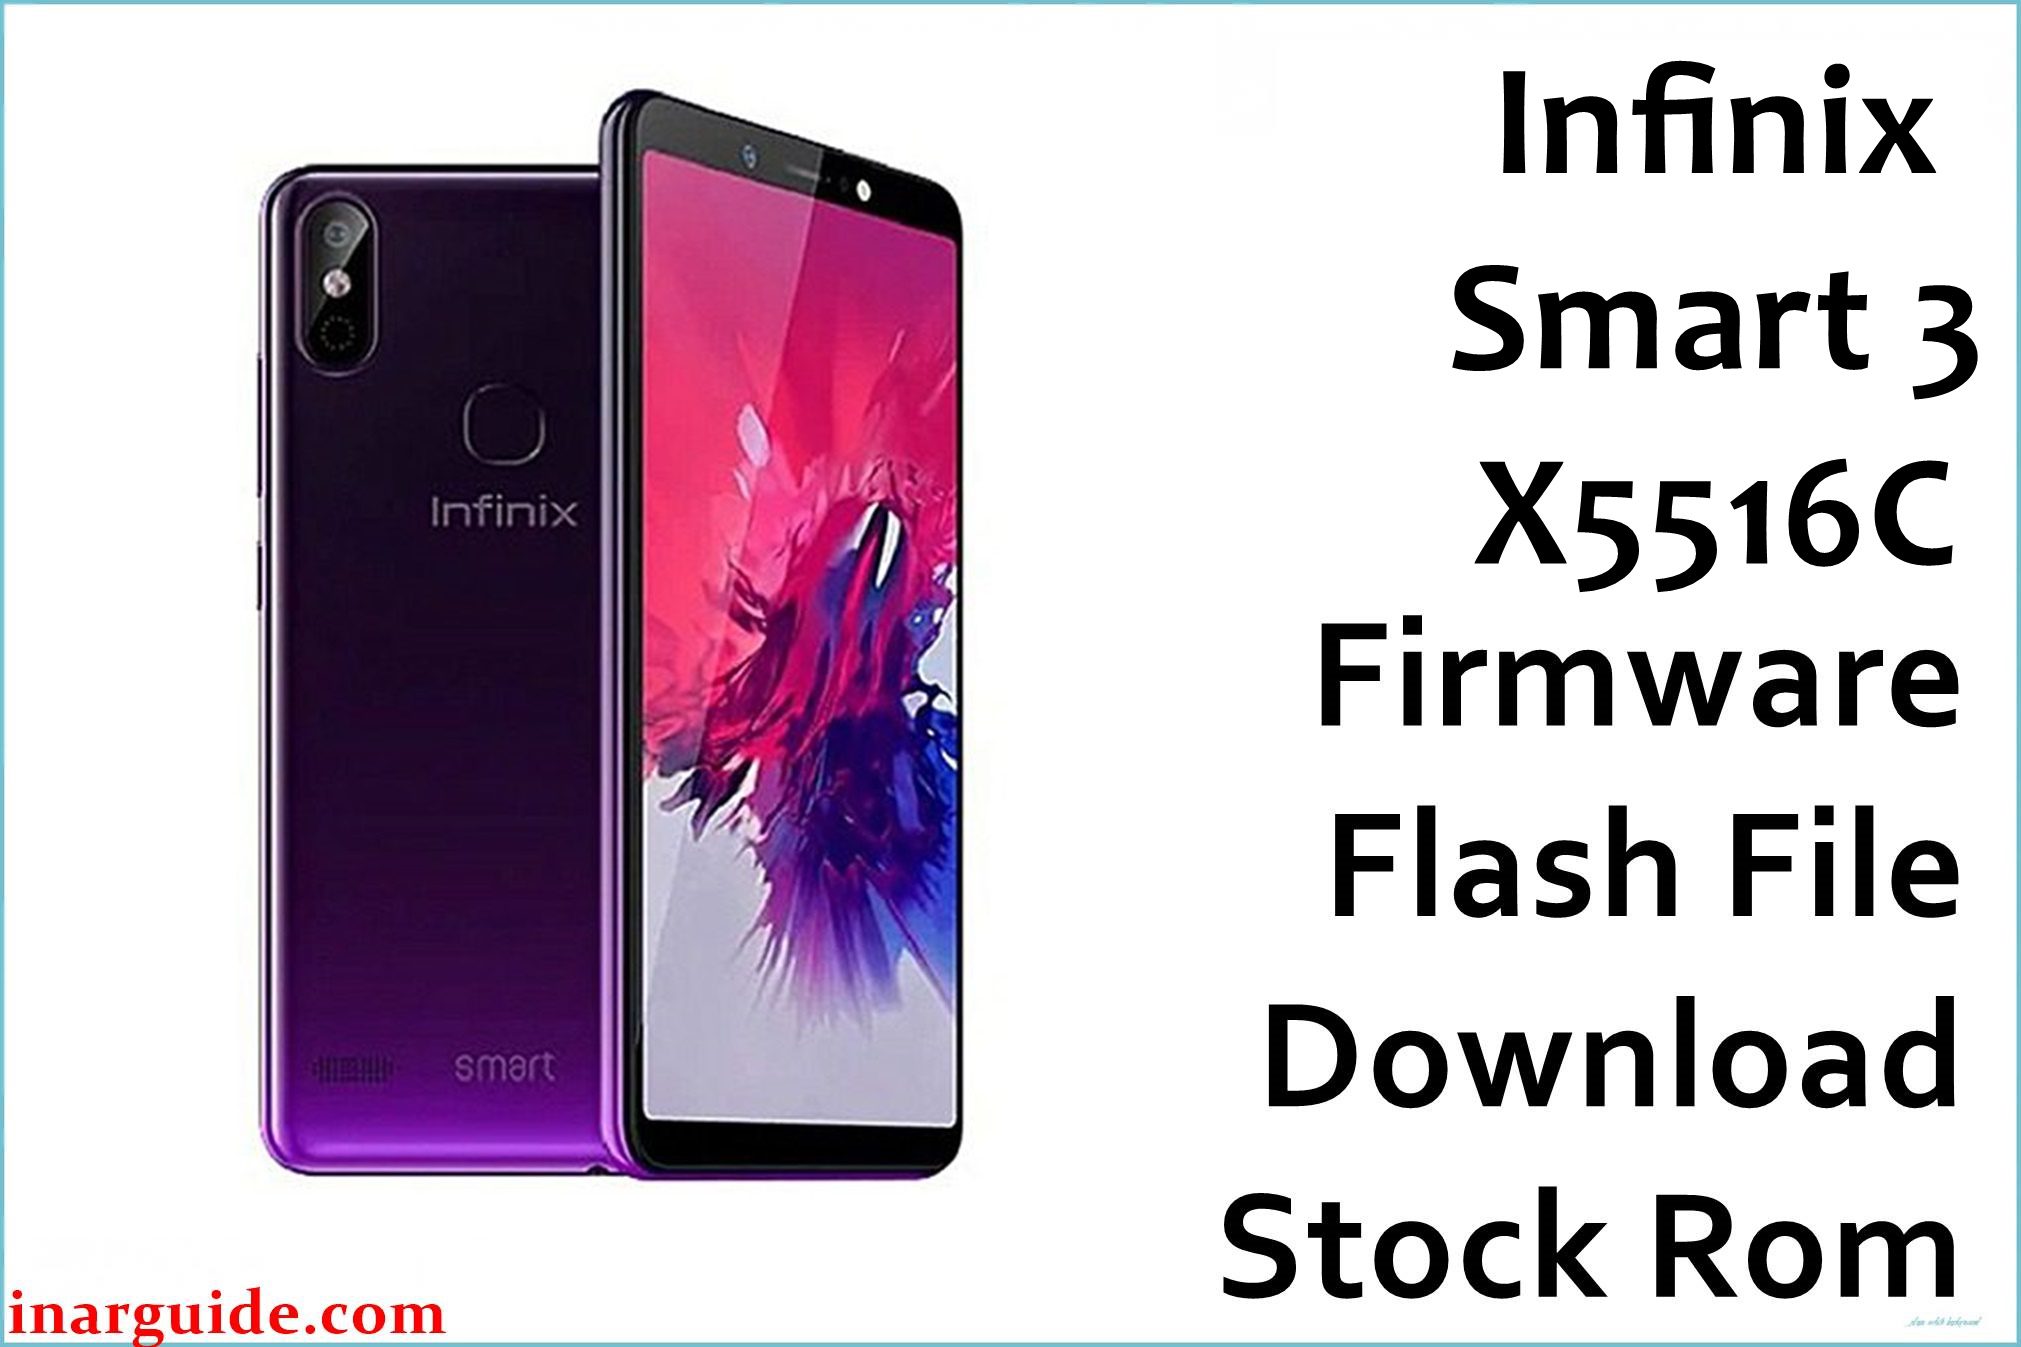 Infinix Smart 3 X5516C